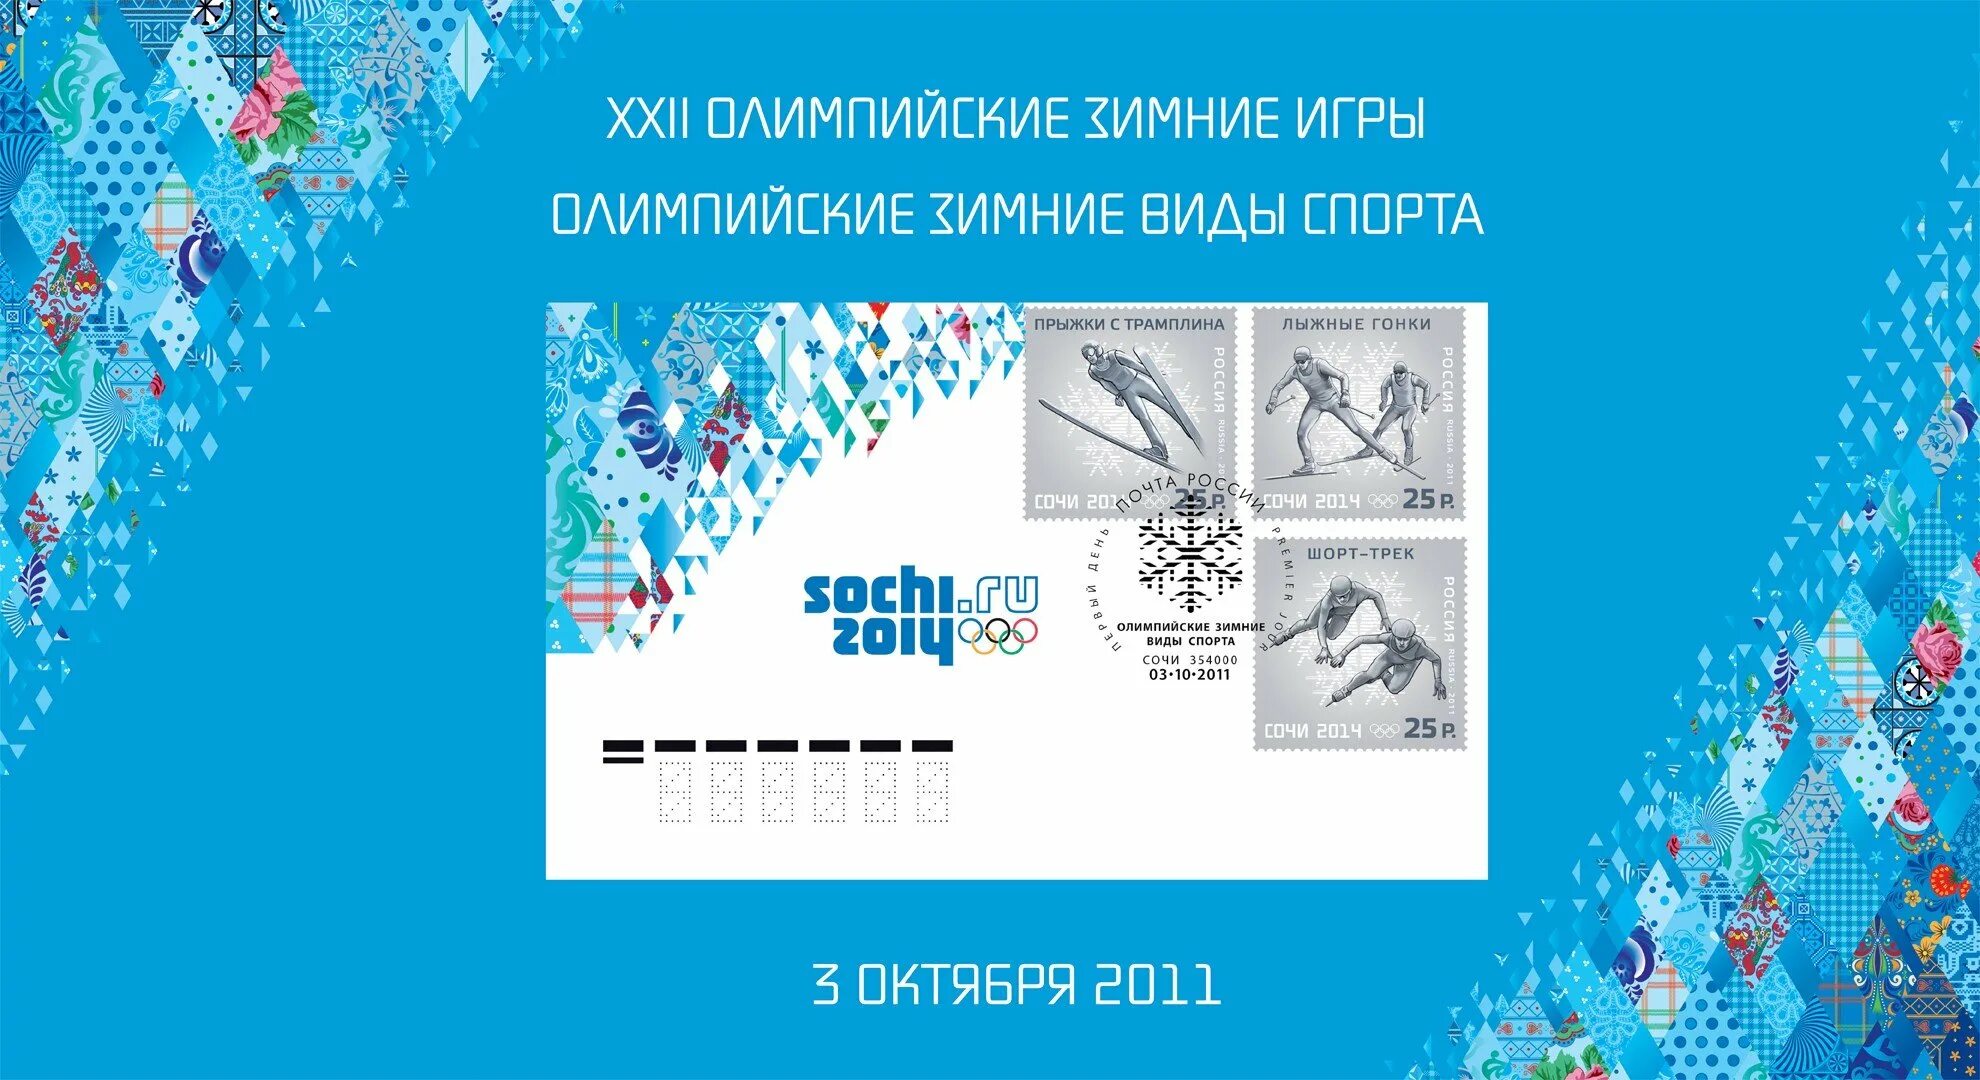 Музыка олимпийских игр сочи. Дизайн Олимпийских игр в Сочи-2014. Орнамент Сочи 2014.